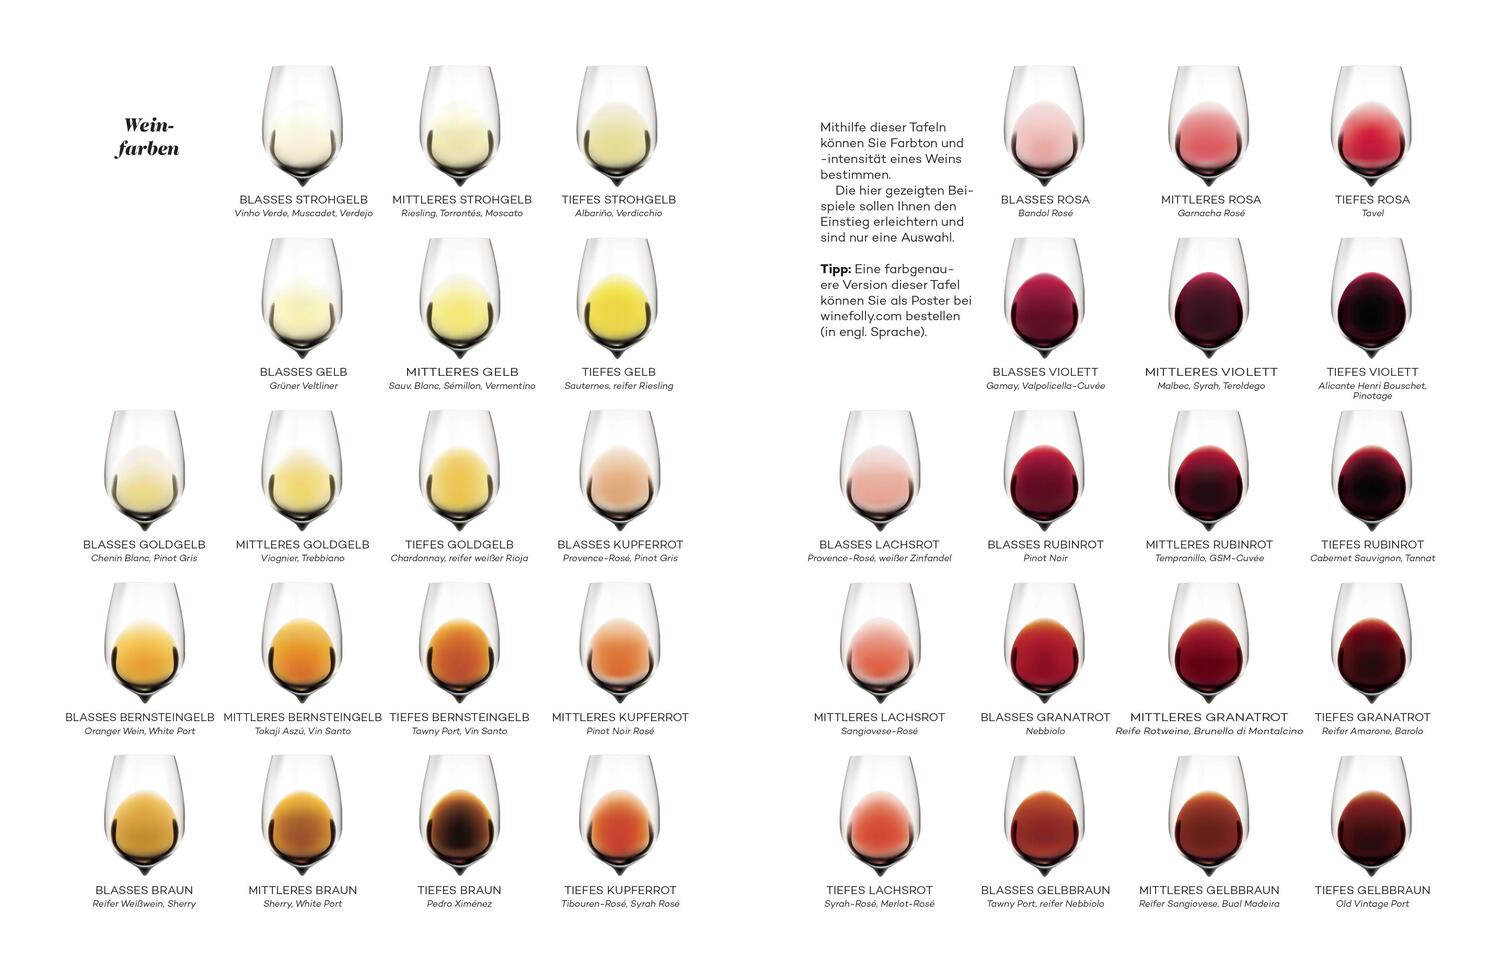 Bild: 9783453207264 | Der Master-Wein-Guide | Madeline Puckette (u. a.) | Buch | 320 S.